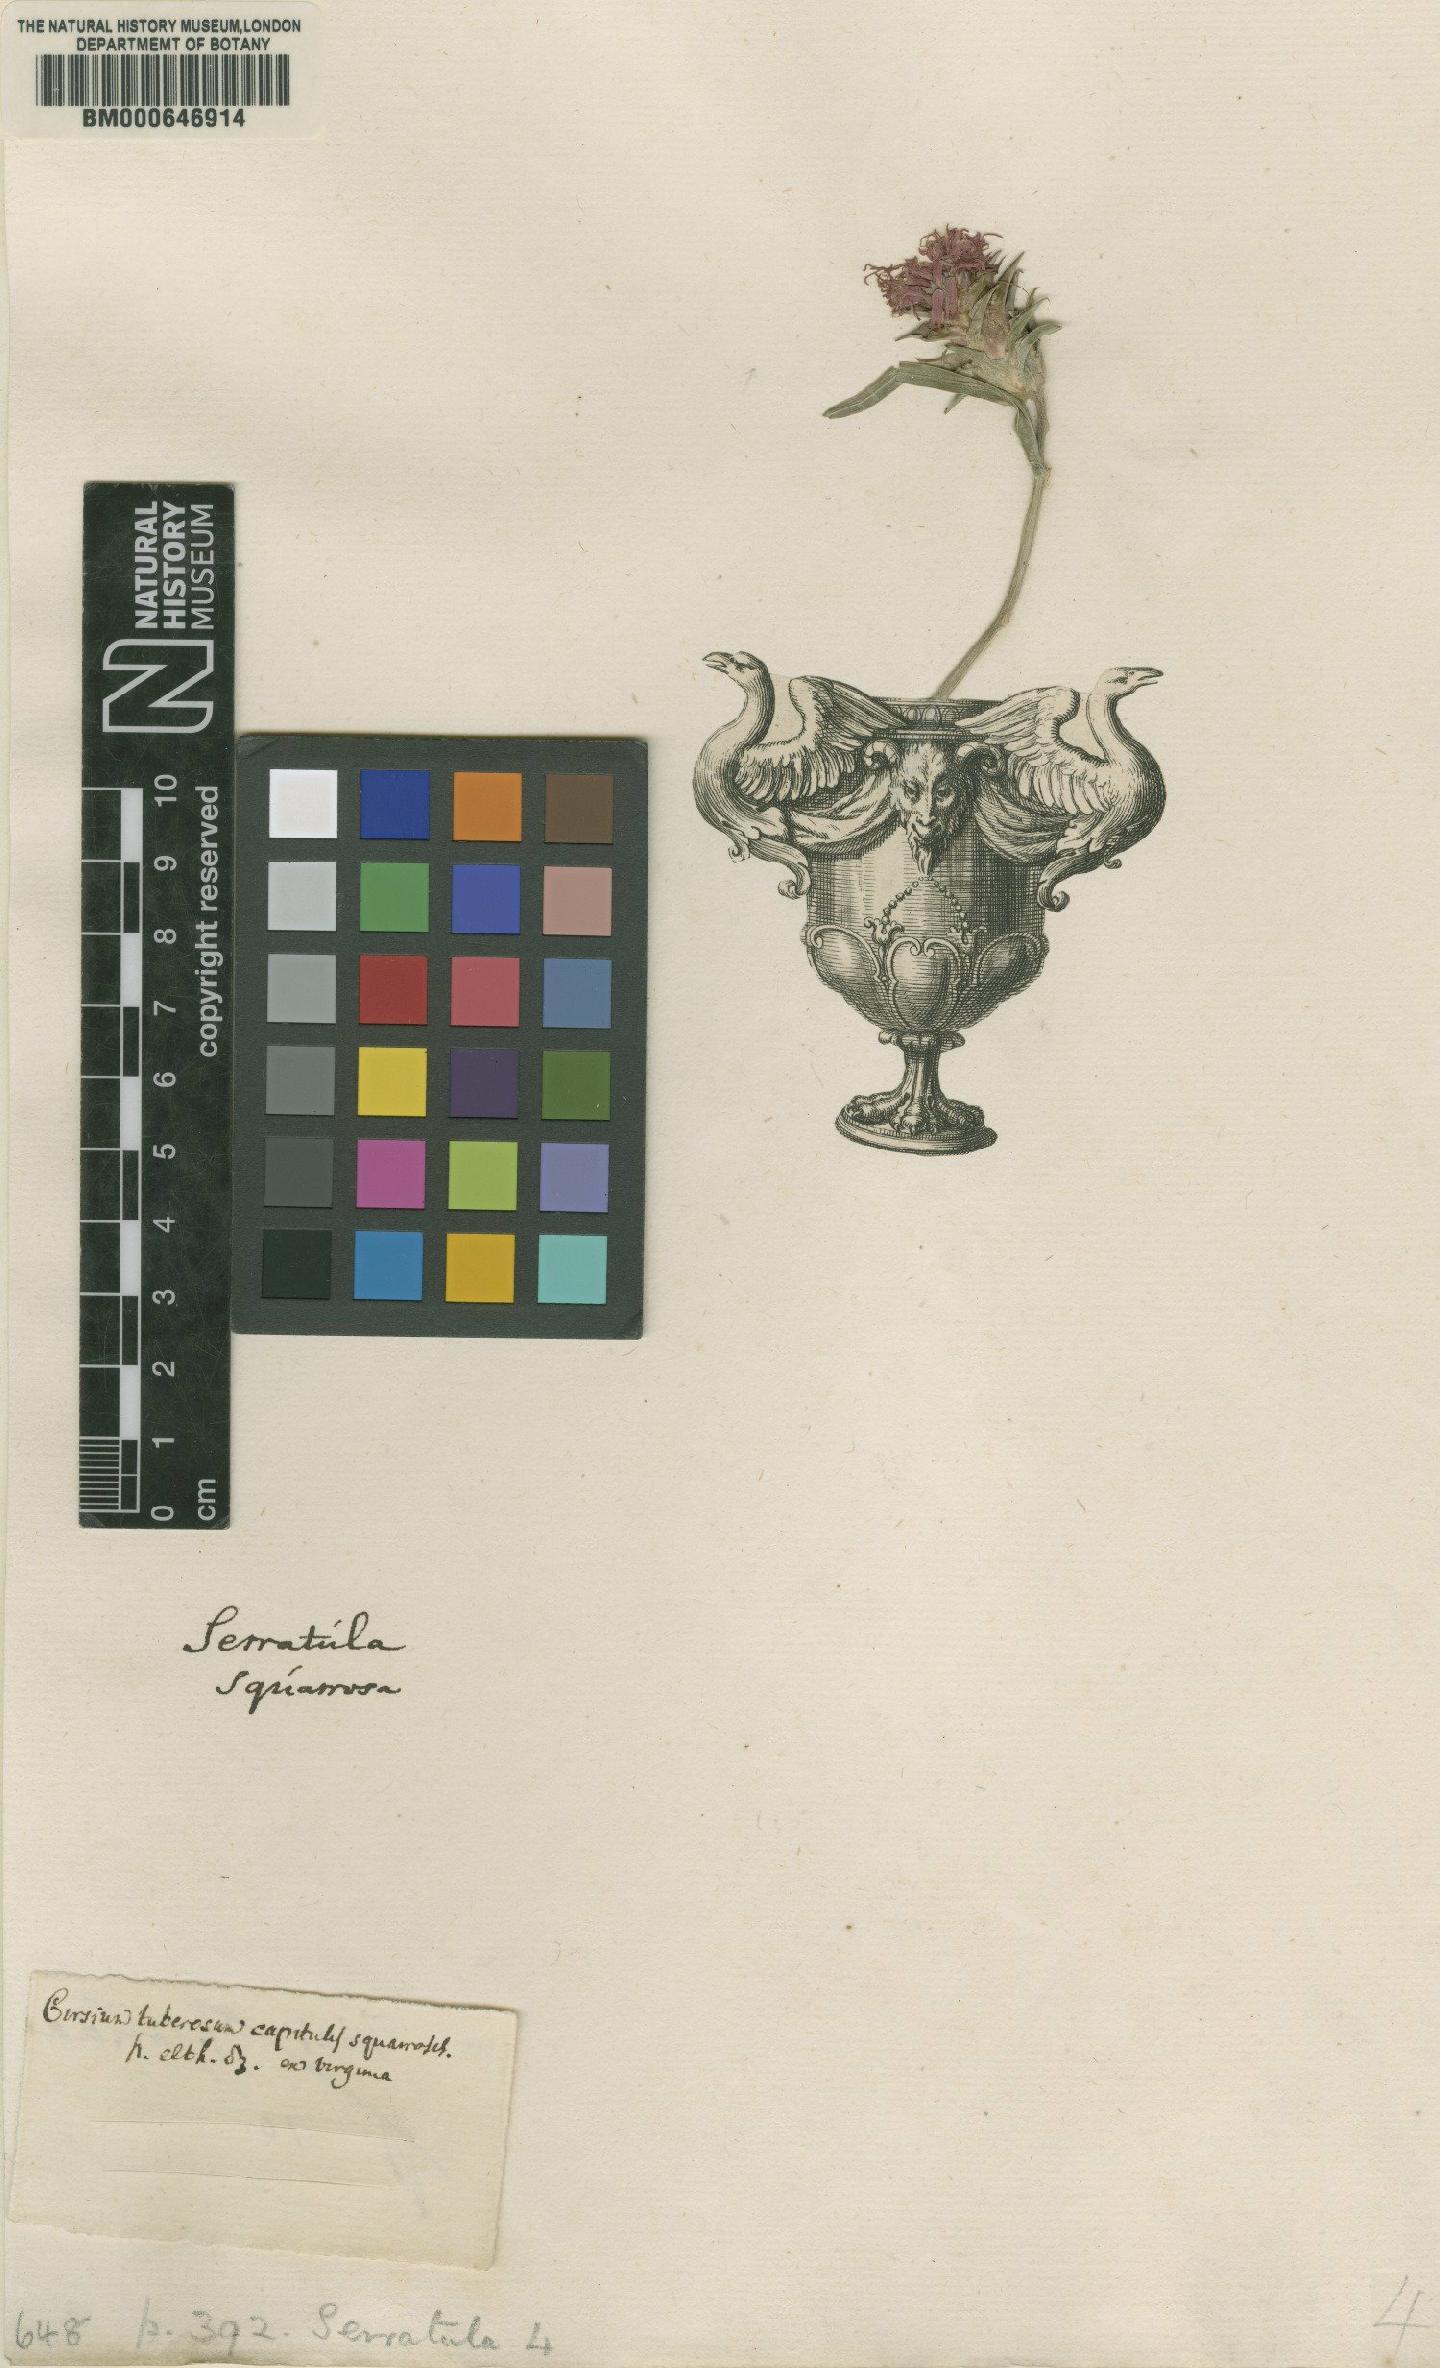 To NHMUK collection (Serratula squarrosa L.; Original material; NHMUK:ecatalogue:4703526)